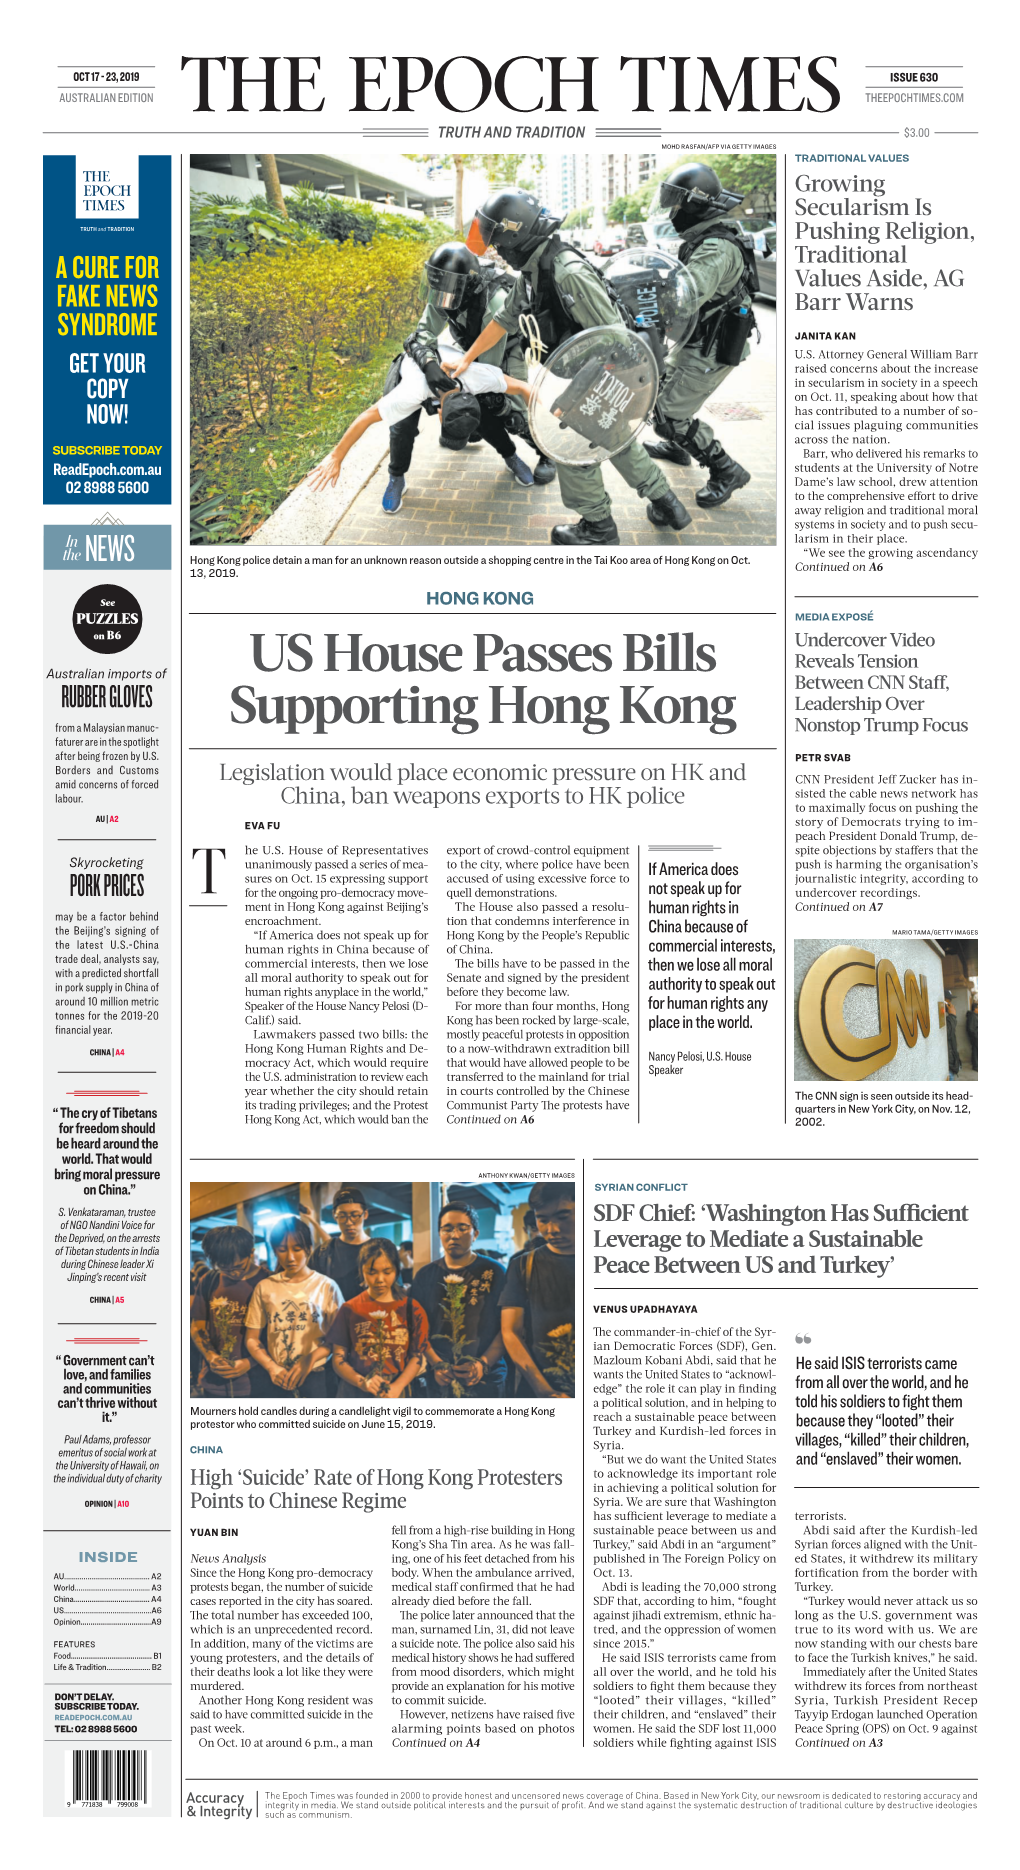 US House Passes Bills Supporting Hong Kong